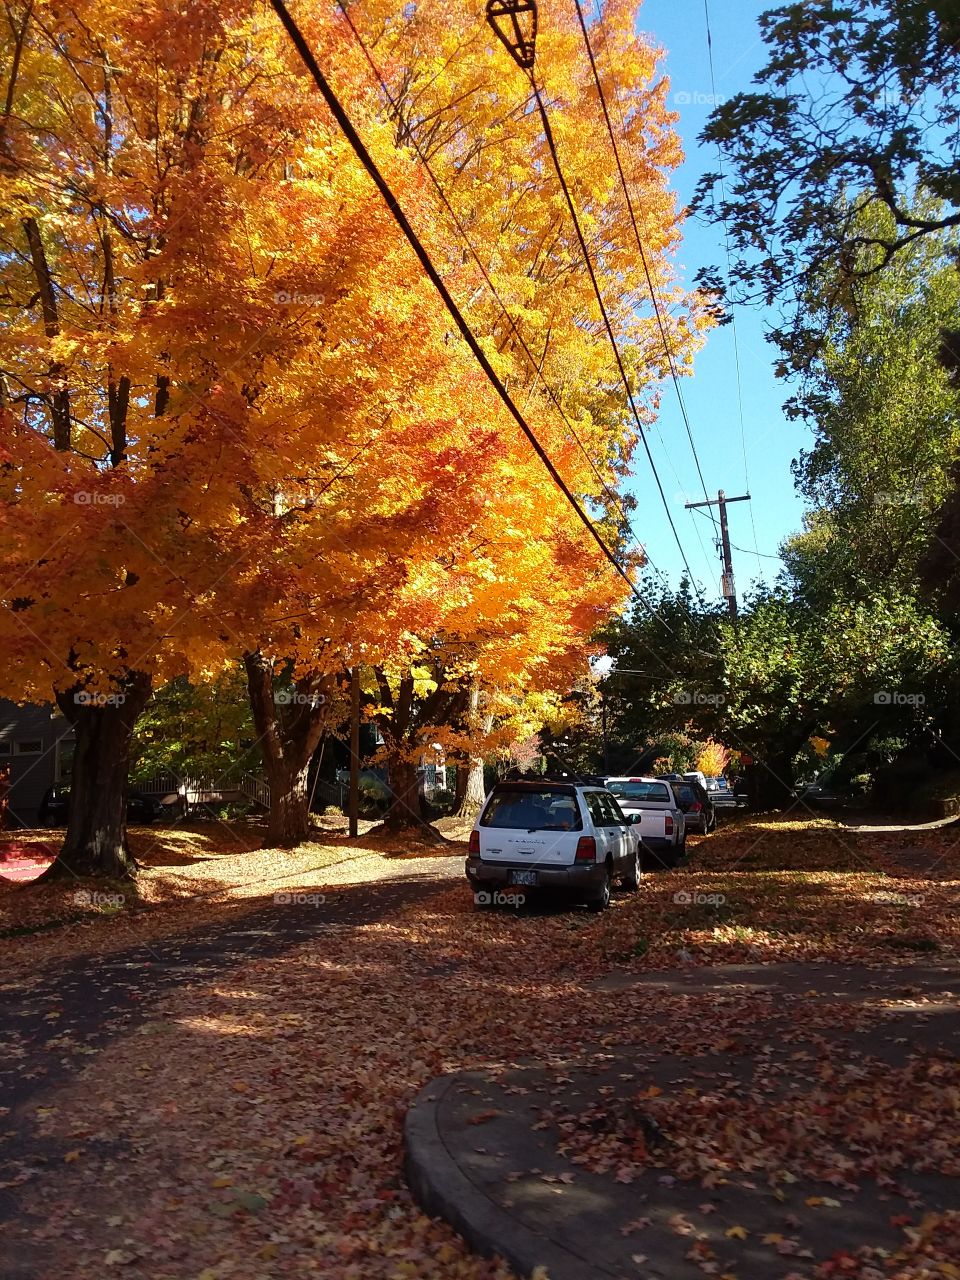 Fall Time In Portland